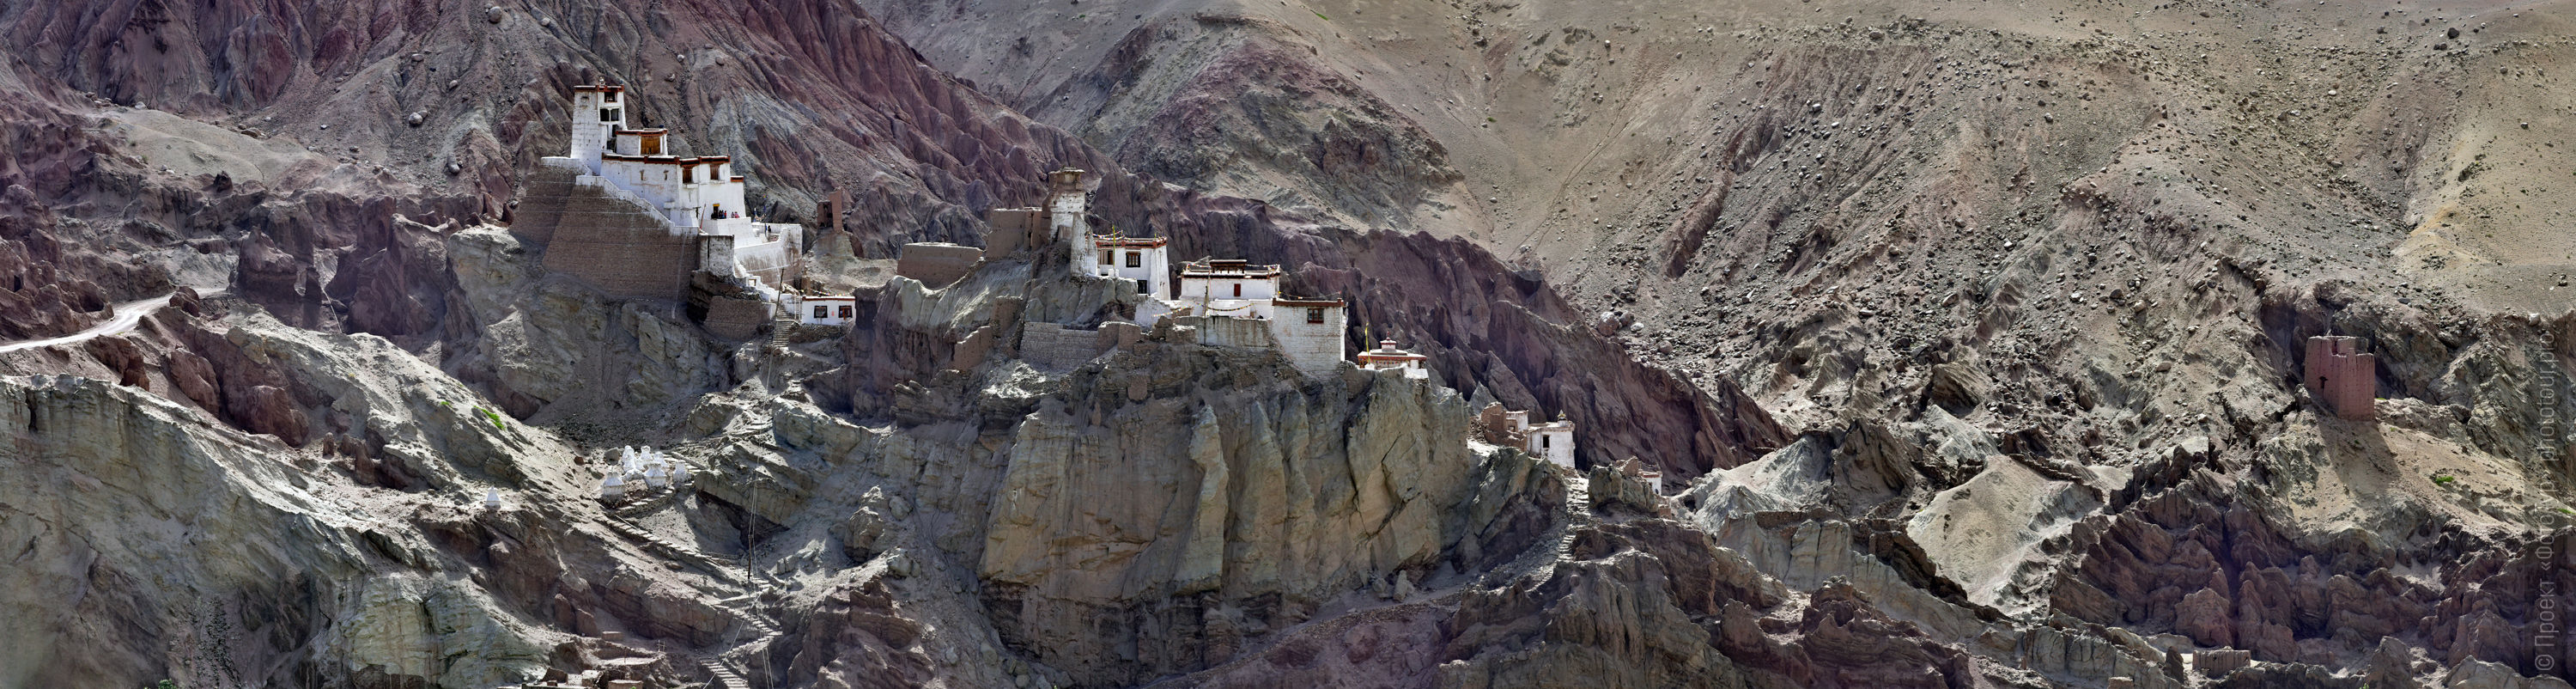 Buddhist monastery Basgo Gonpa. Budget photo tour Legends of Tibet: Zanskar, September 15 - September 26, 2021.